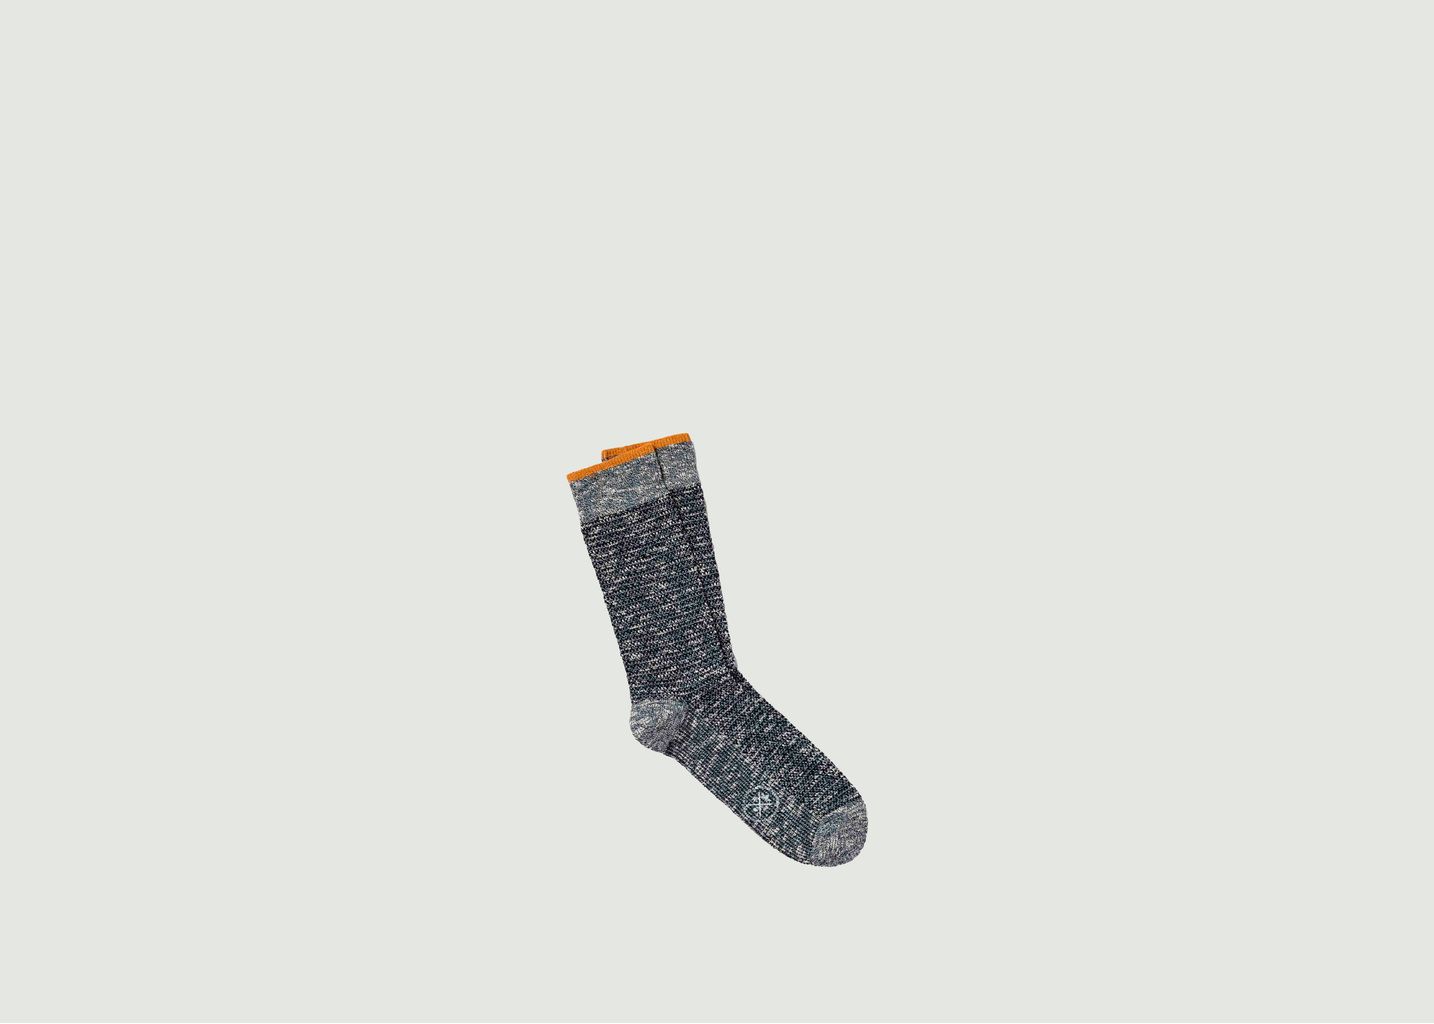 Robin mottled socks - Royalties